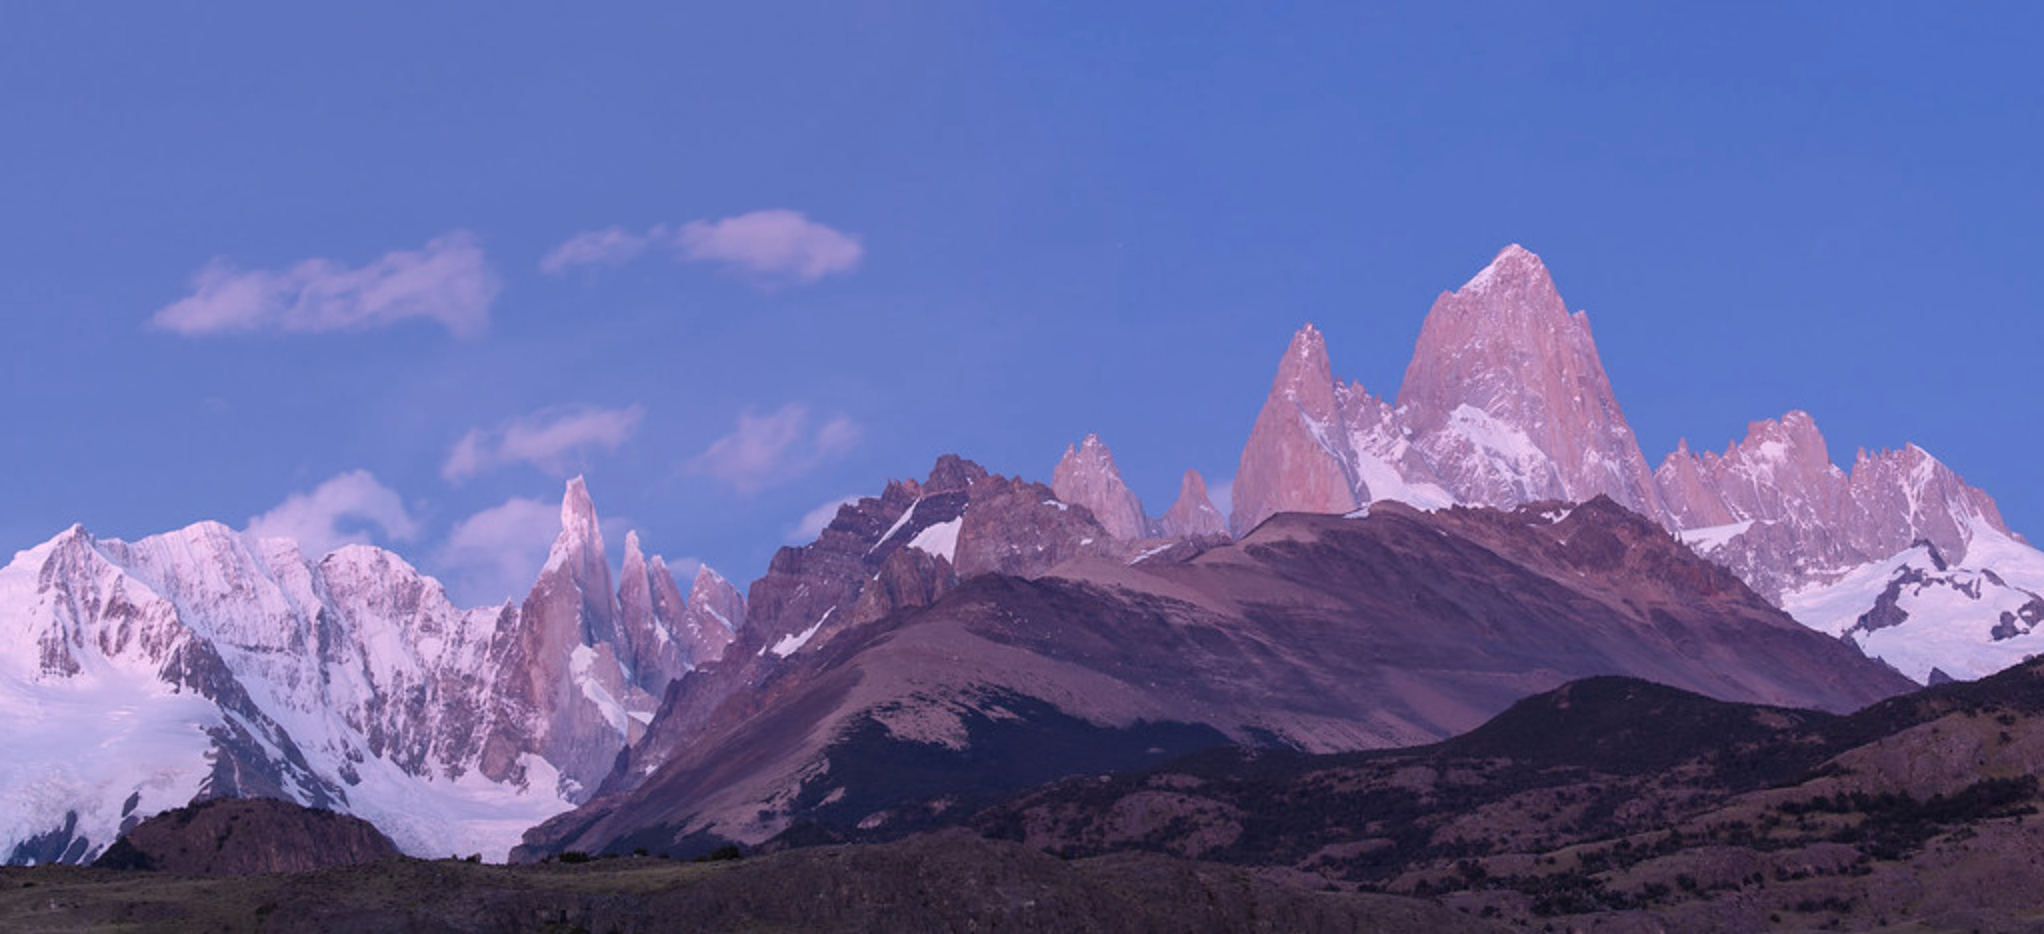 Argentina Patagonia landscape